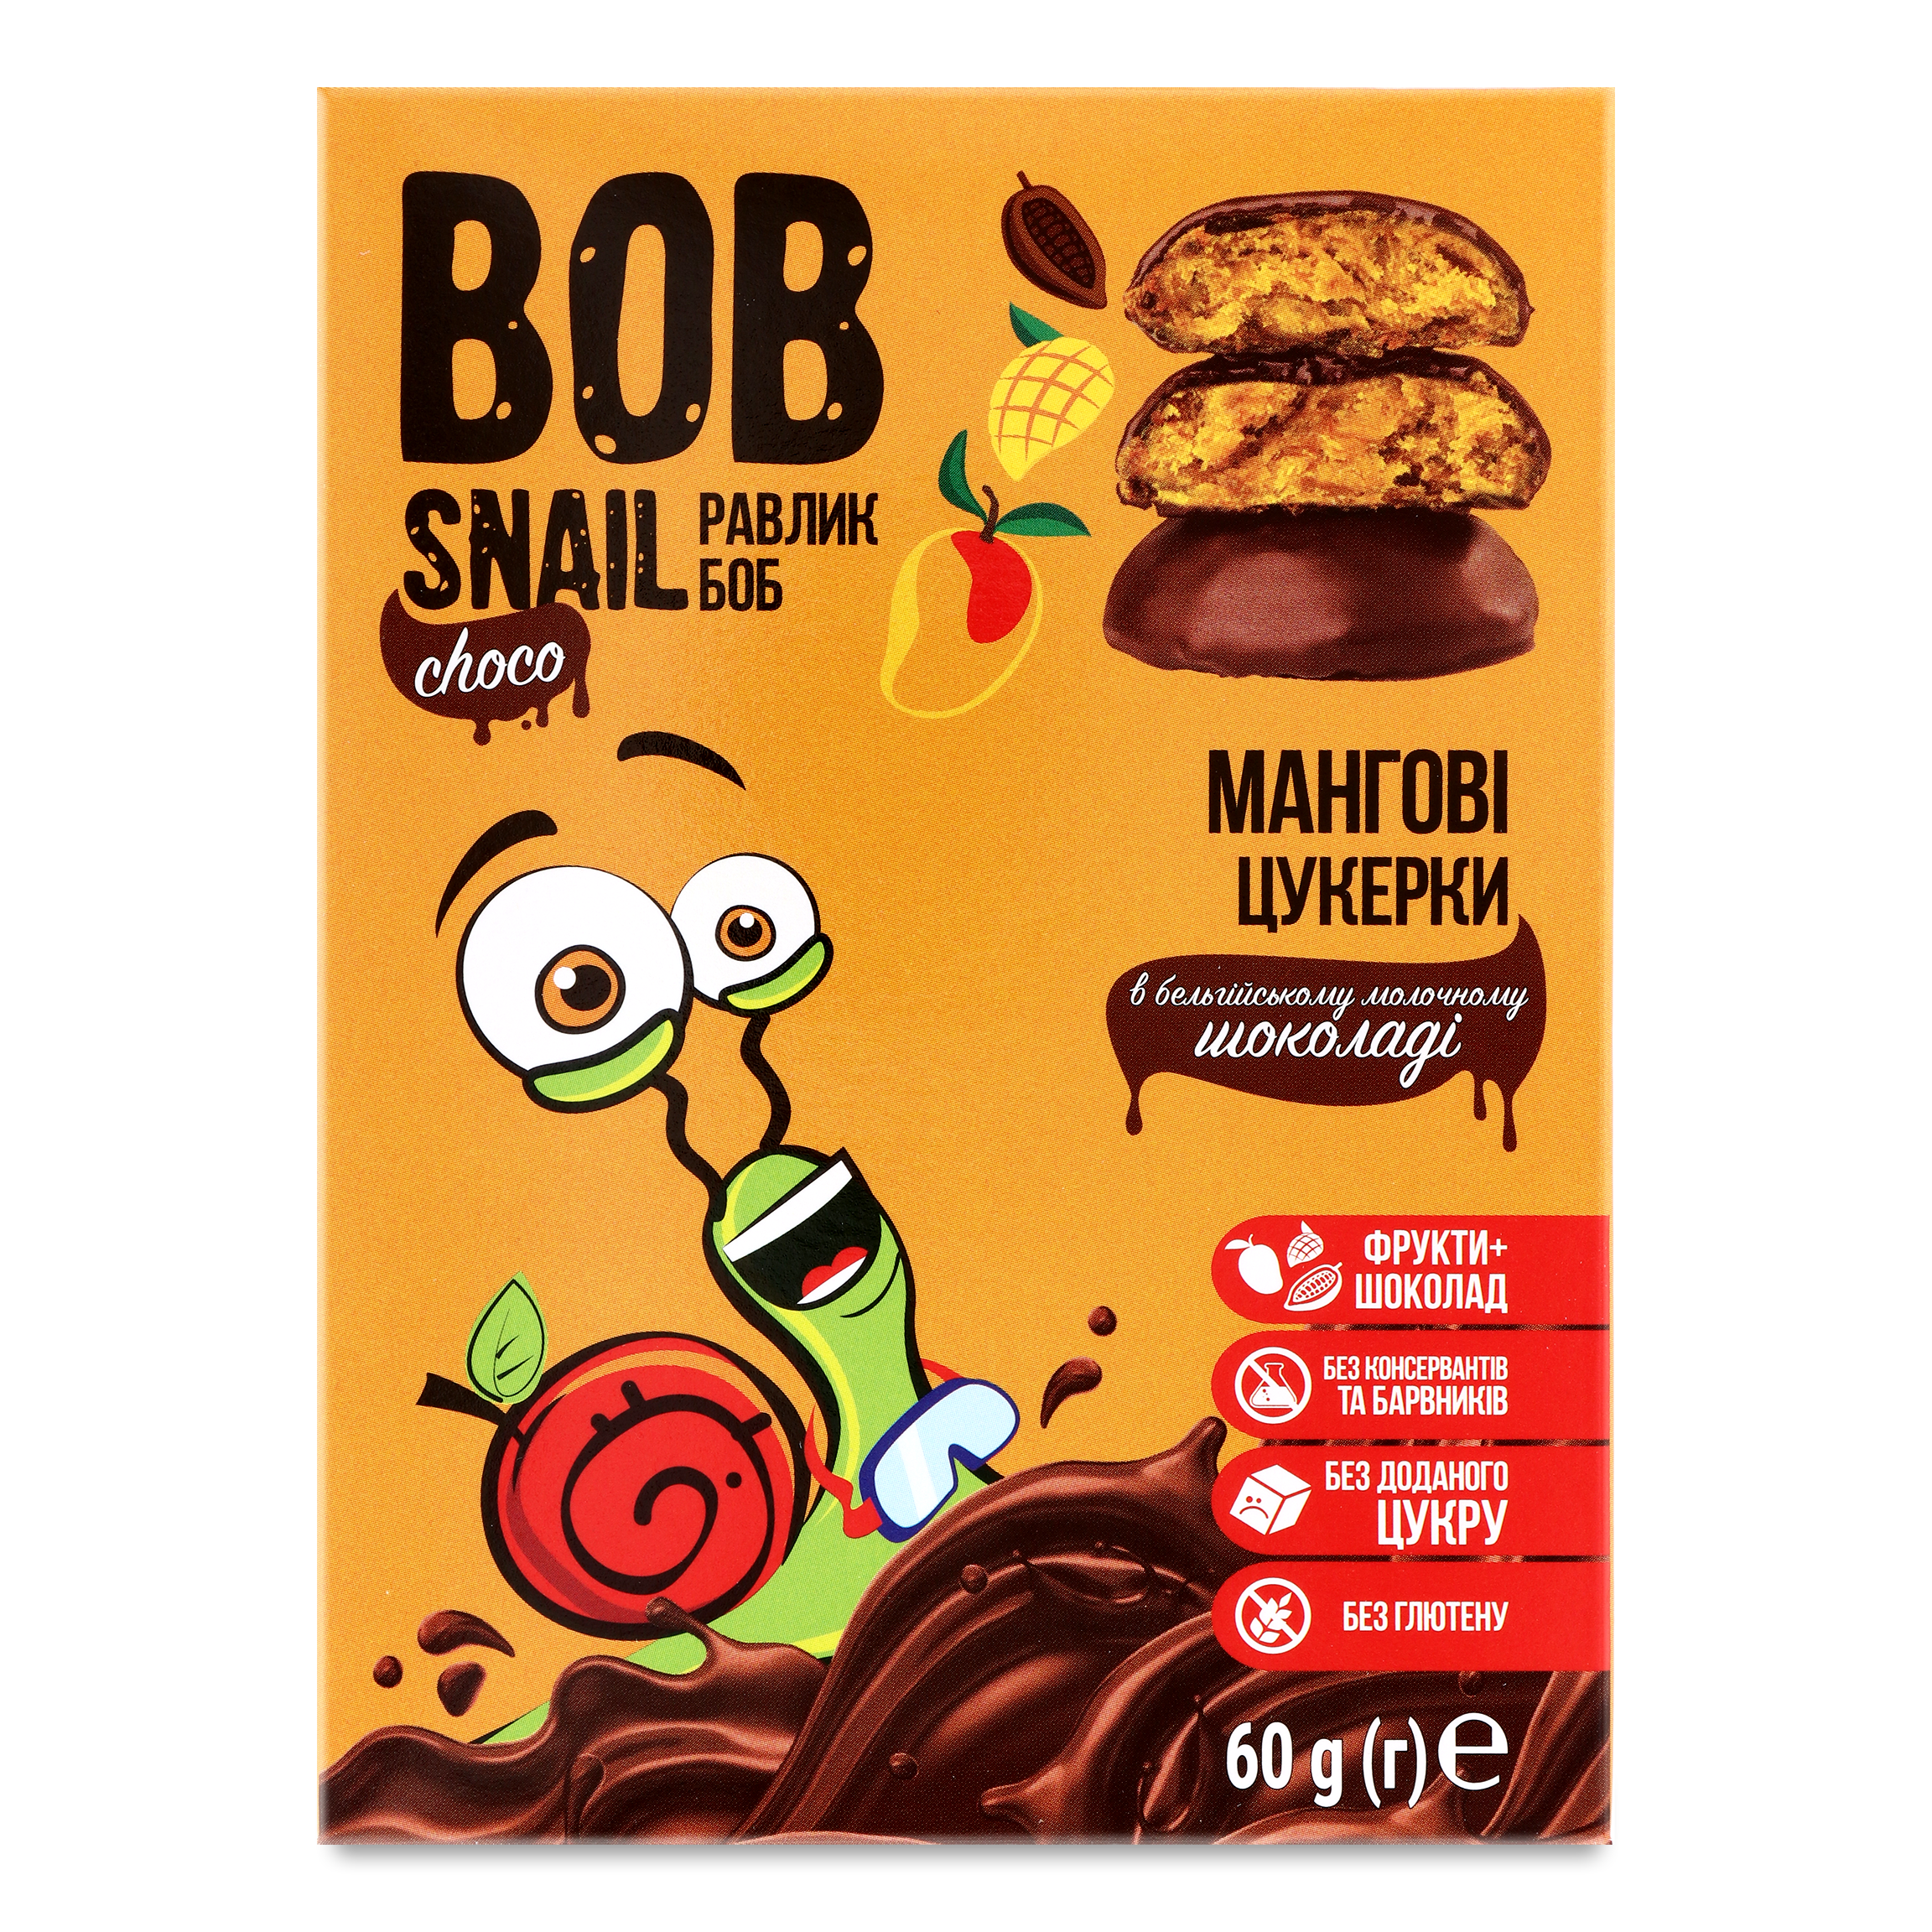 Цукерки Bob Snail мангові в молочному шоколаді 60г